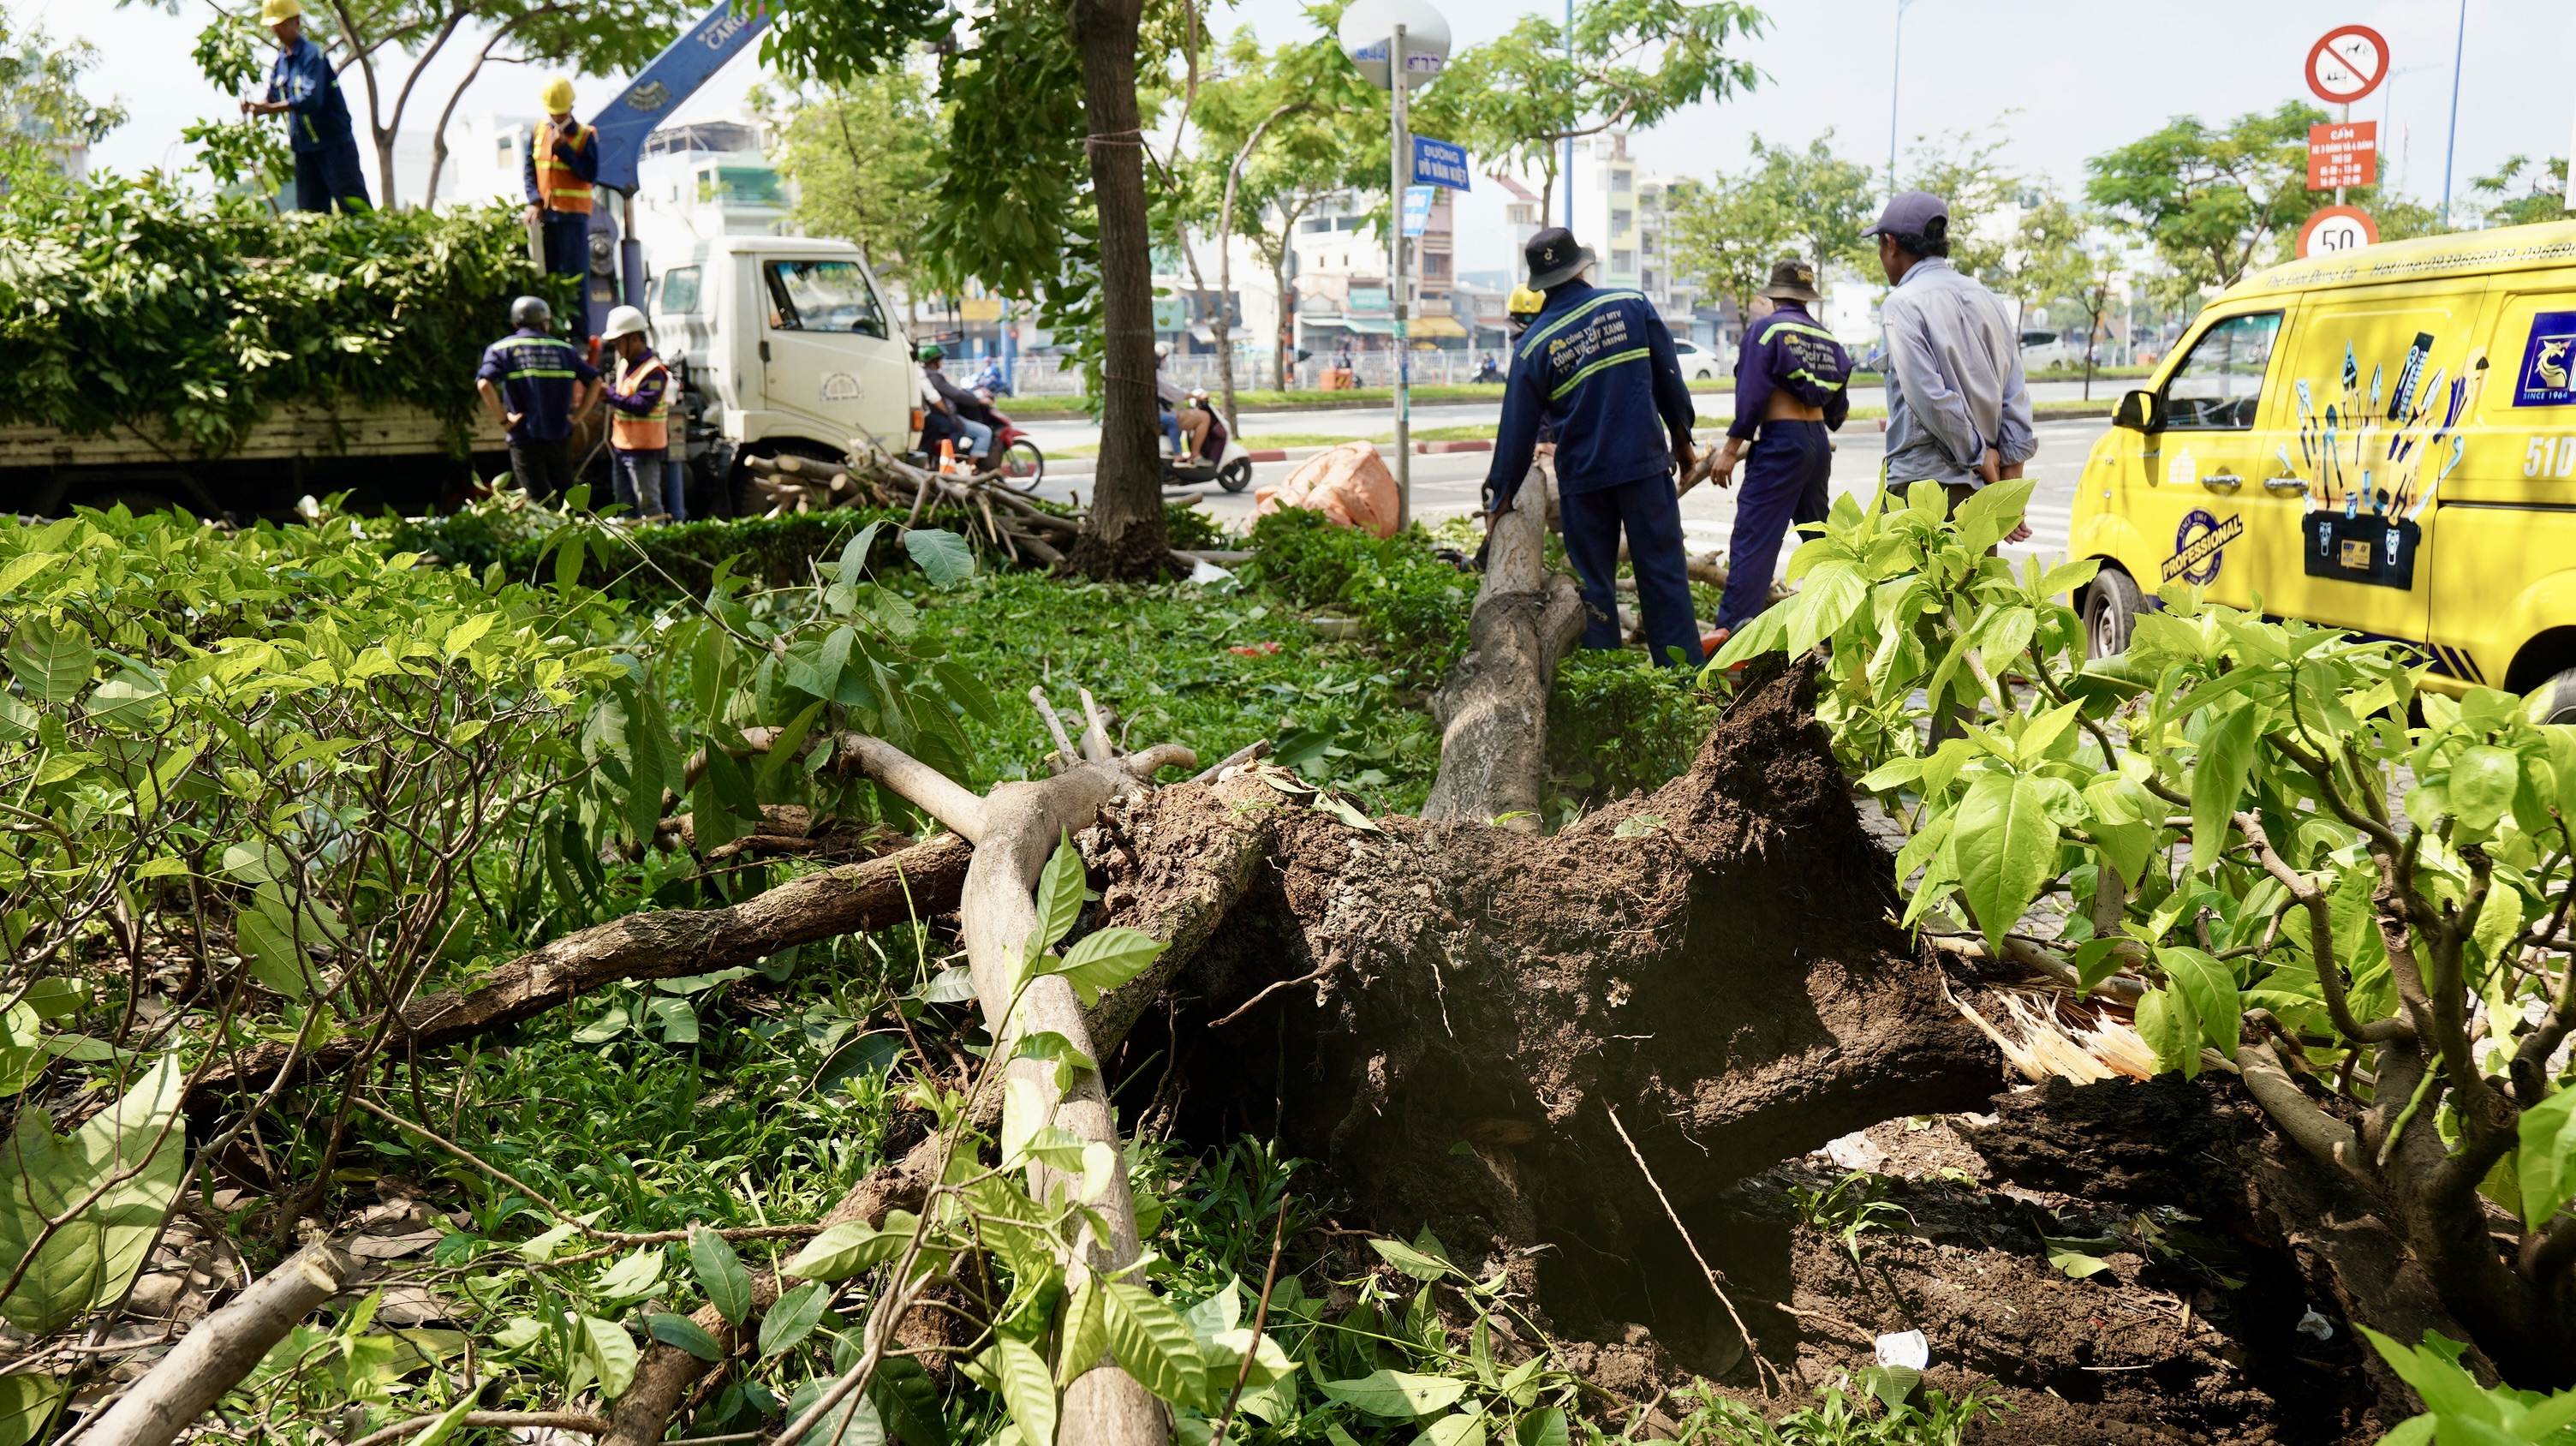 Cây xanh ngã đổ tại giao lộ đường Võ Văn Kiệt - Nguyễn Thi tối 19.9.